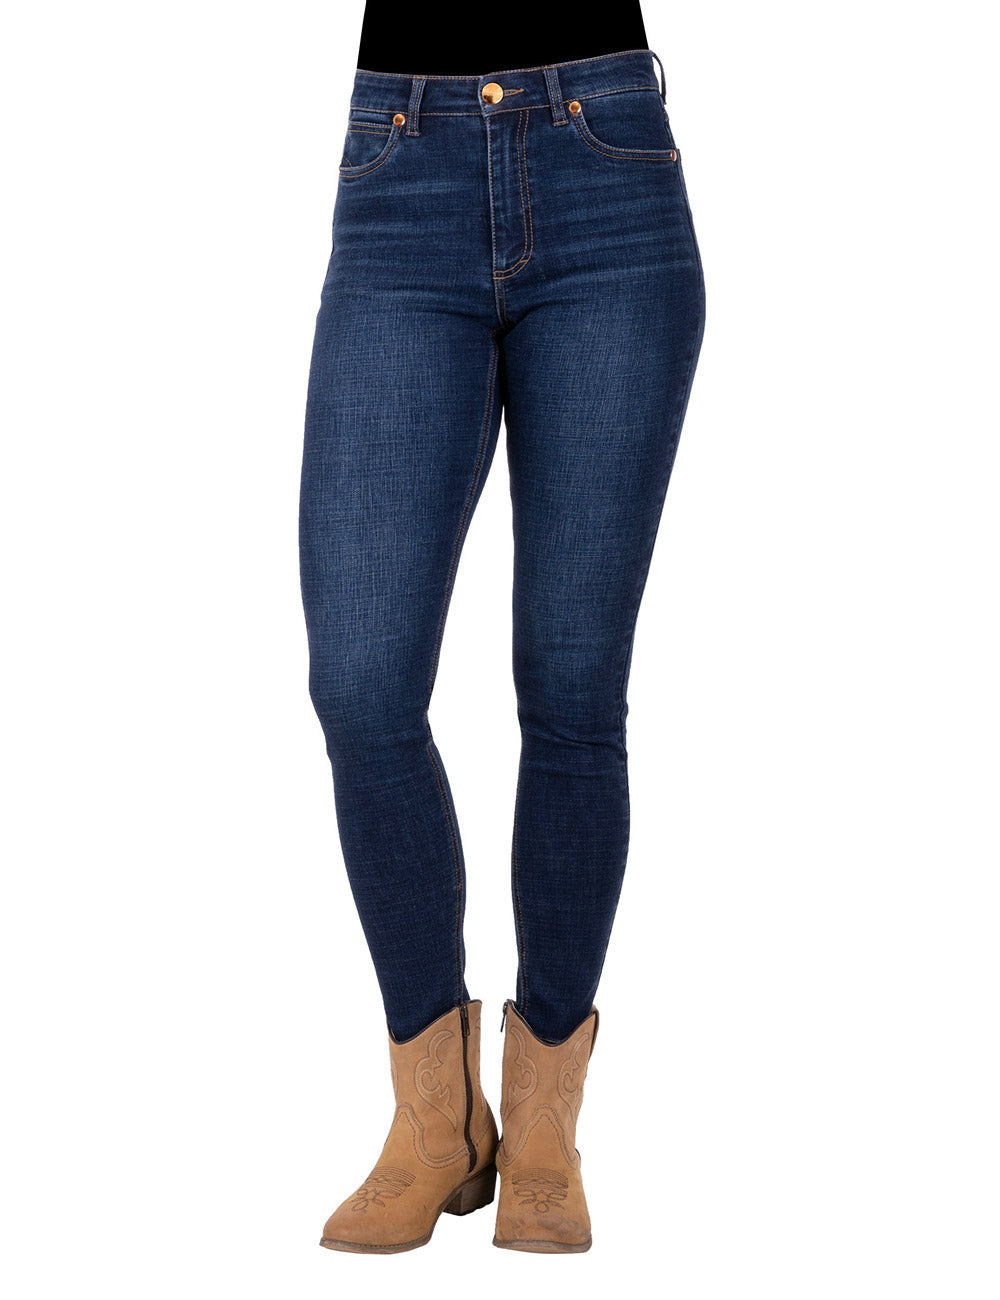 Wrangler Women's Sierra Skinny Jean 30" Leg